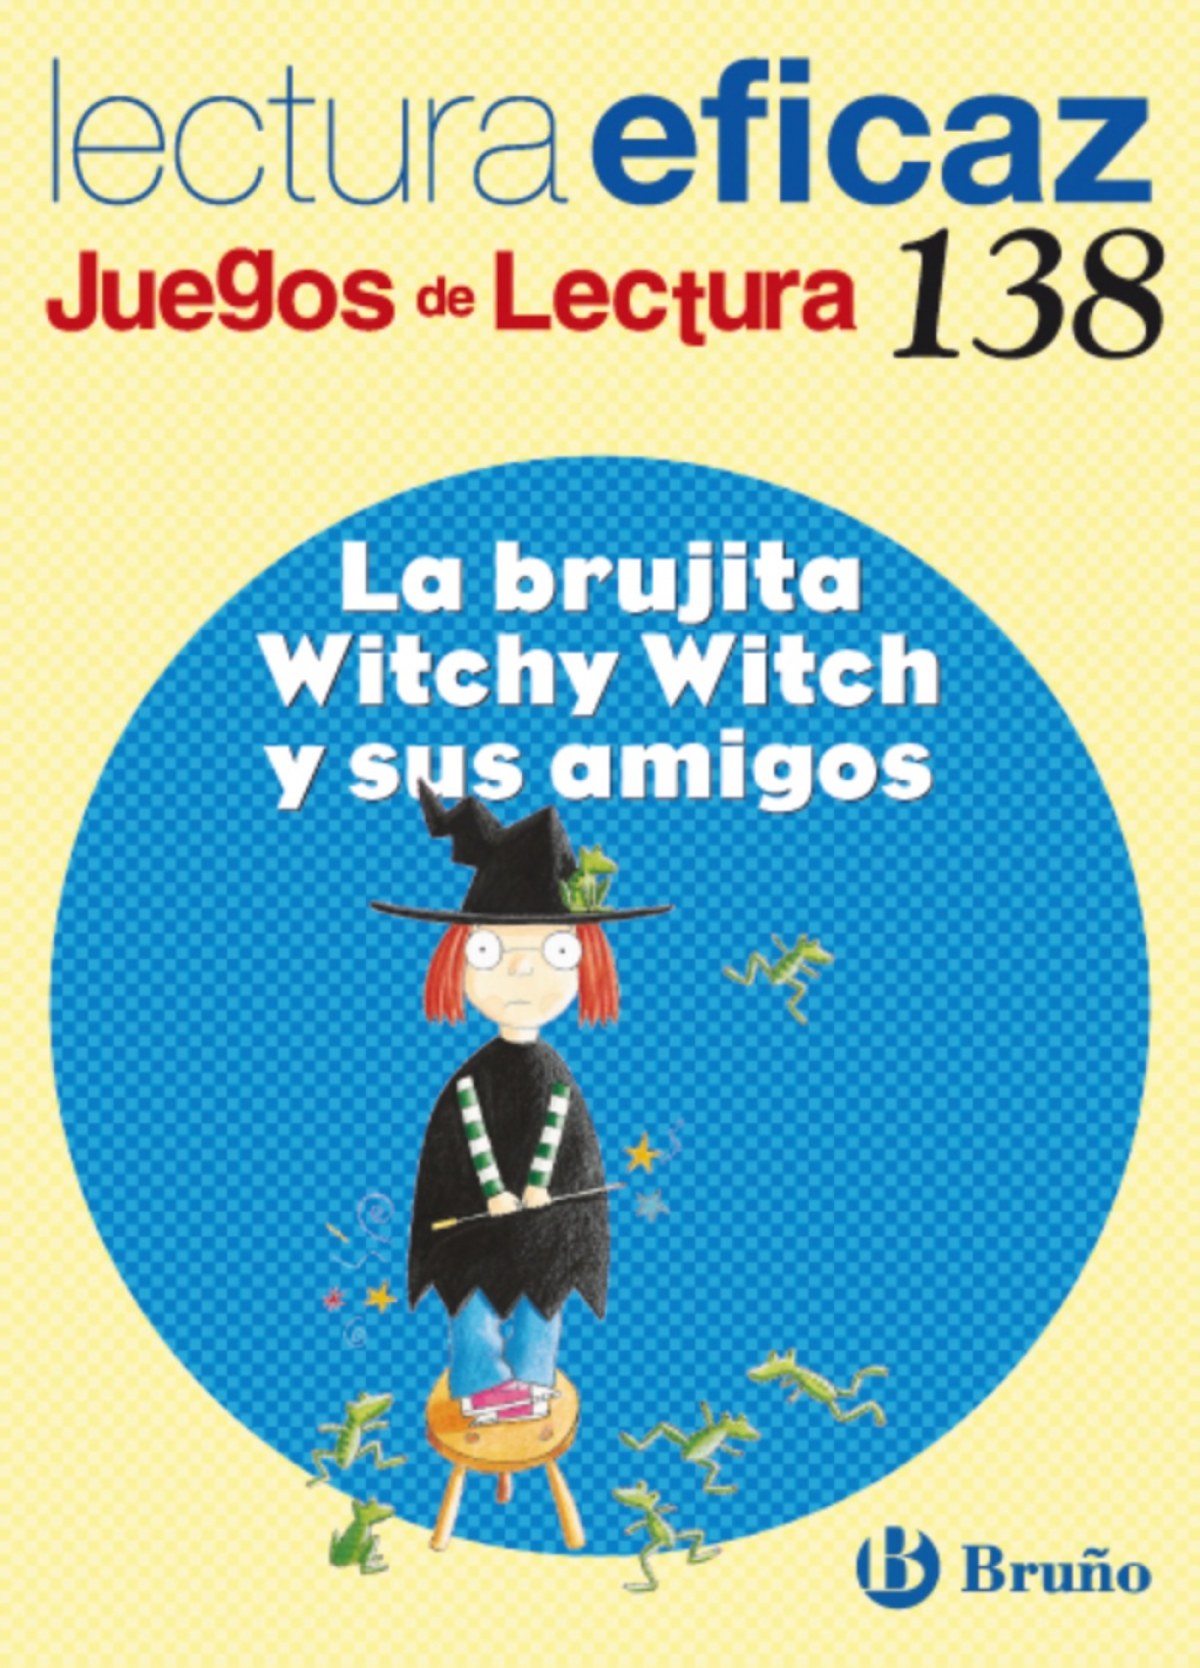 138.brujita witchy witch y sus amigos.(juegos lectura) - Labajo González, Mª Trinidad